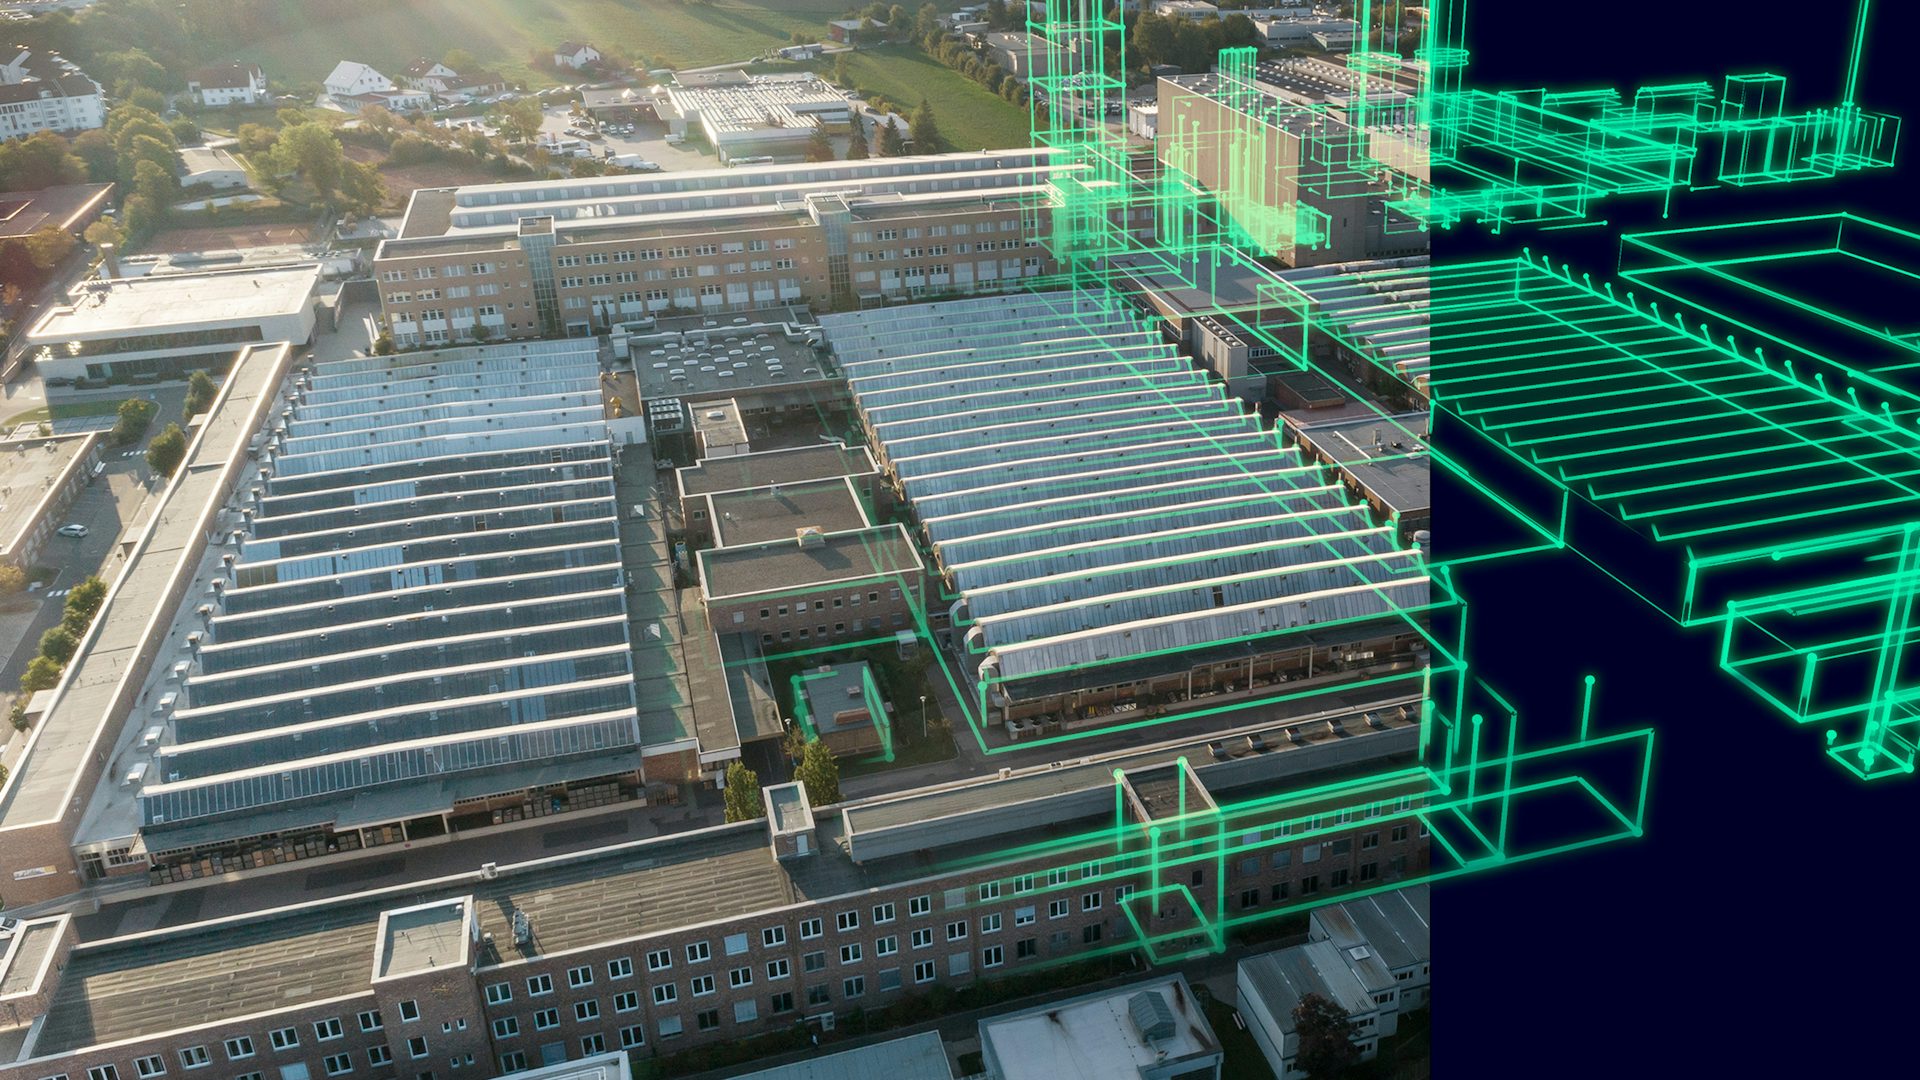 Imagen de fábrica digital y su correspondiente real. Juntas conforman el gemelo digital integral de Siemens para fabricación.